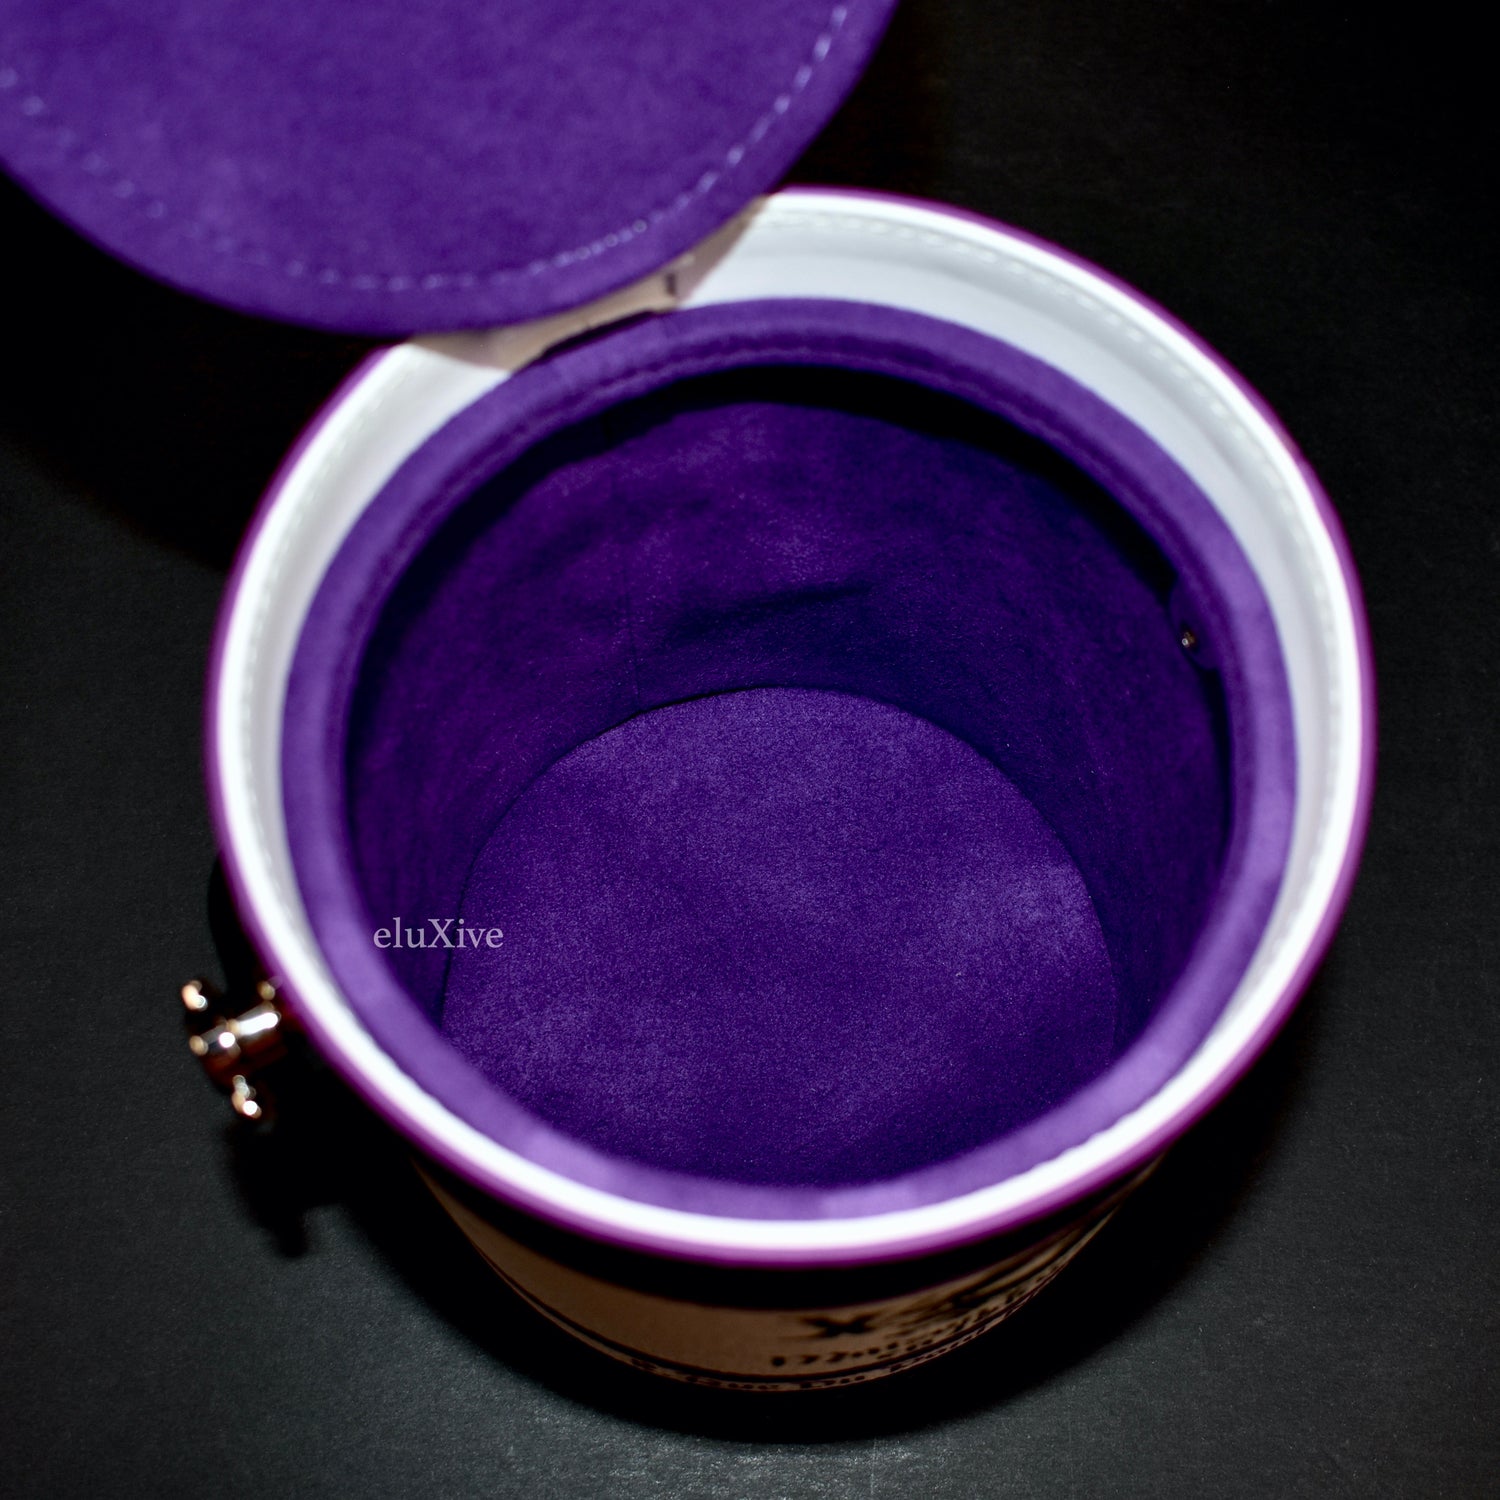 Louis Vuitton M81591 LV Paint Can, Purple, One Size